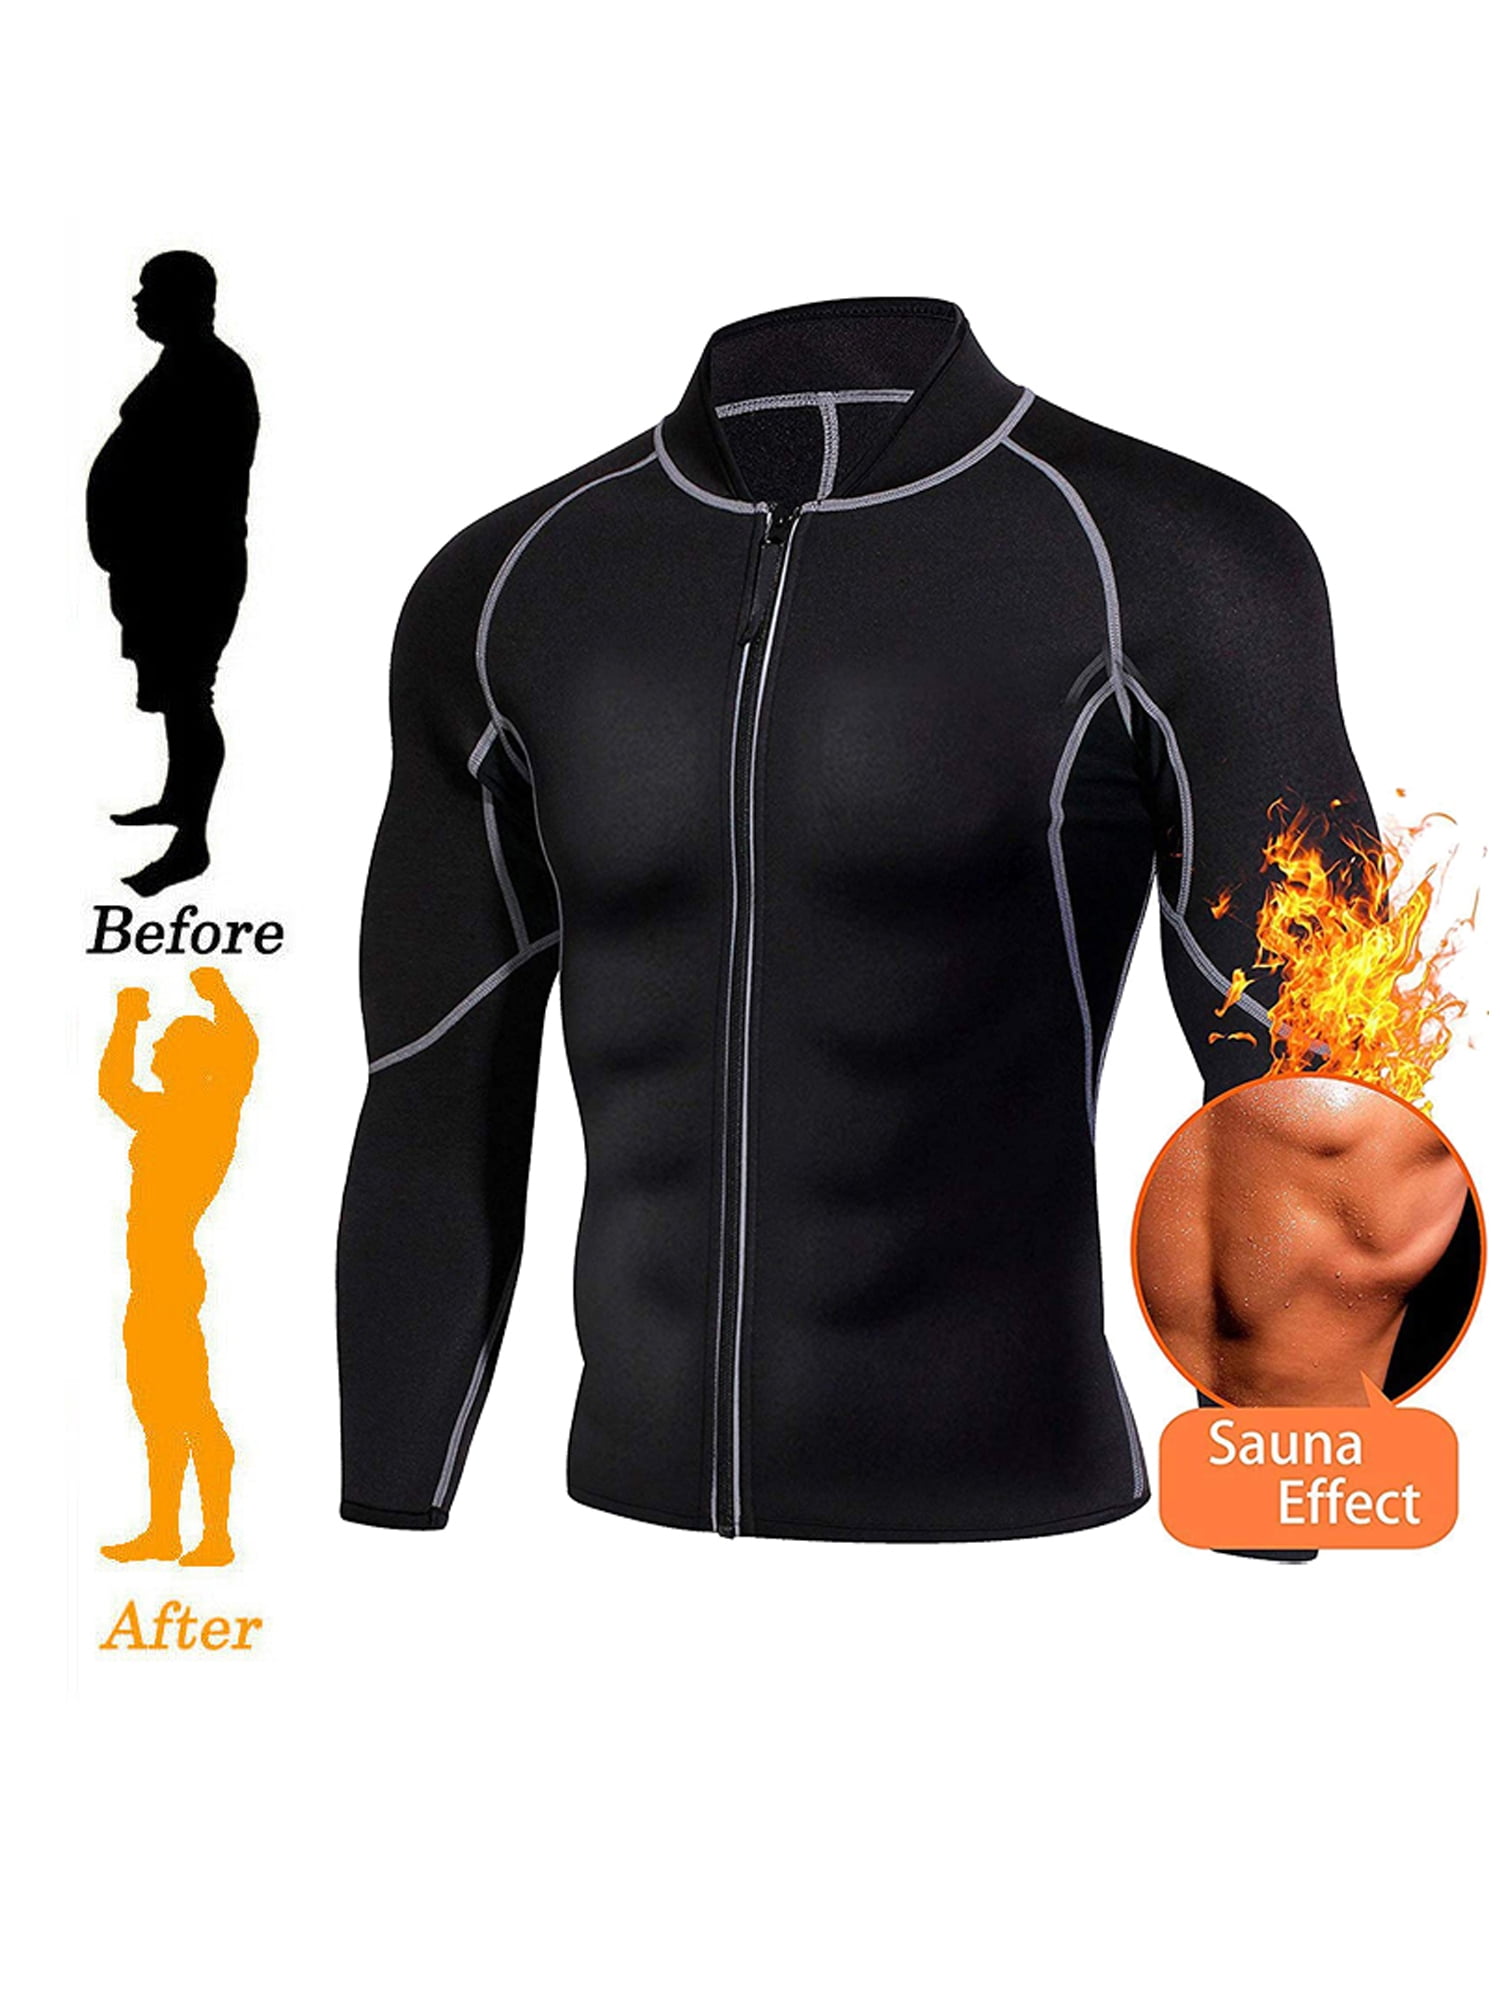 Neoprene Sauna Jacket Women Sauna Suit Weight Loss Belly Fat Waist Trainer L&Sports Sauna Sweat Top Shirt Women Long Sleeve Hot Sauna Workout Shirt Long Zipper 